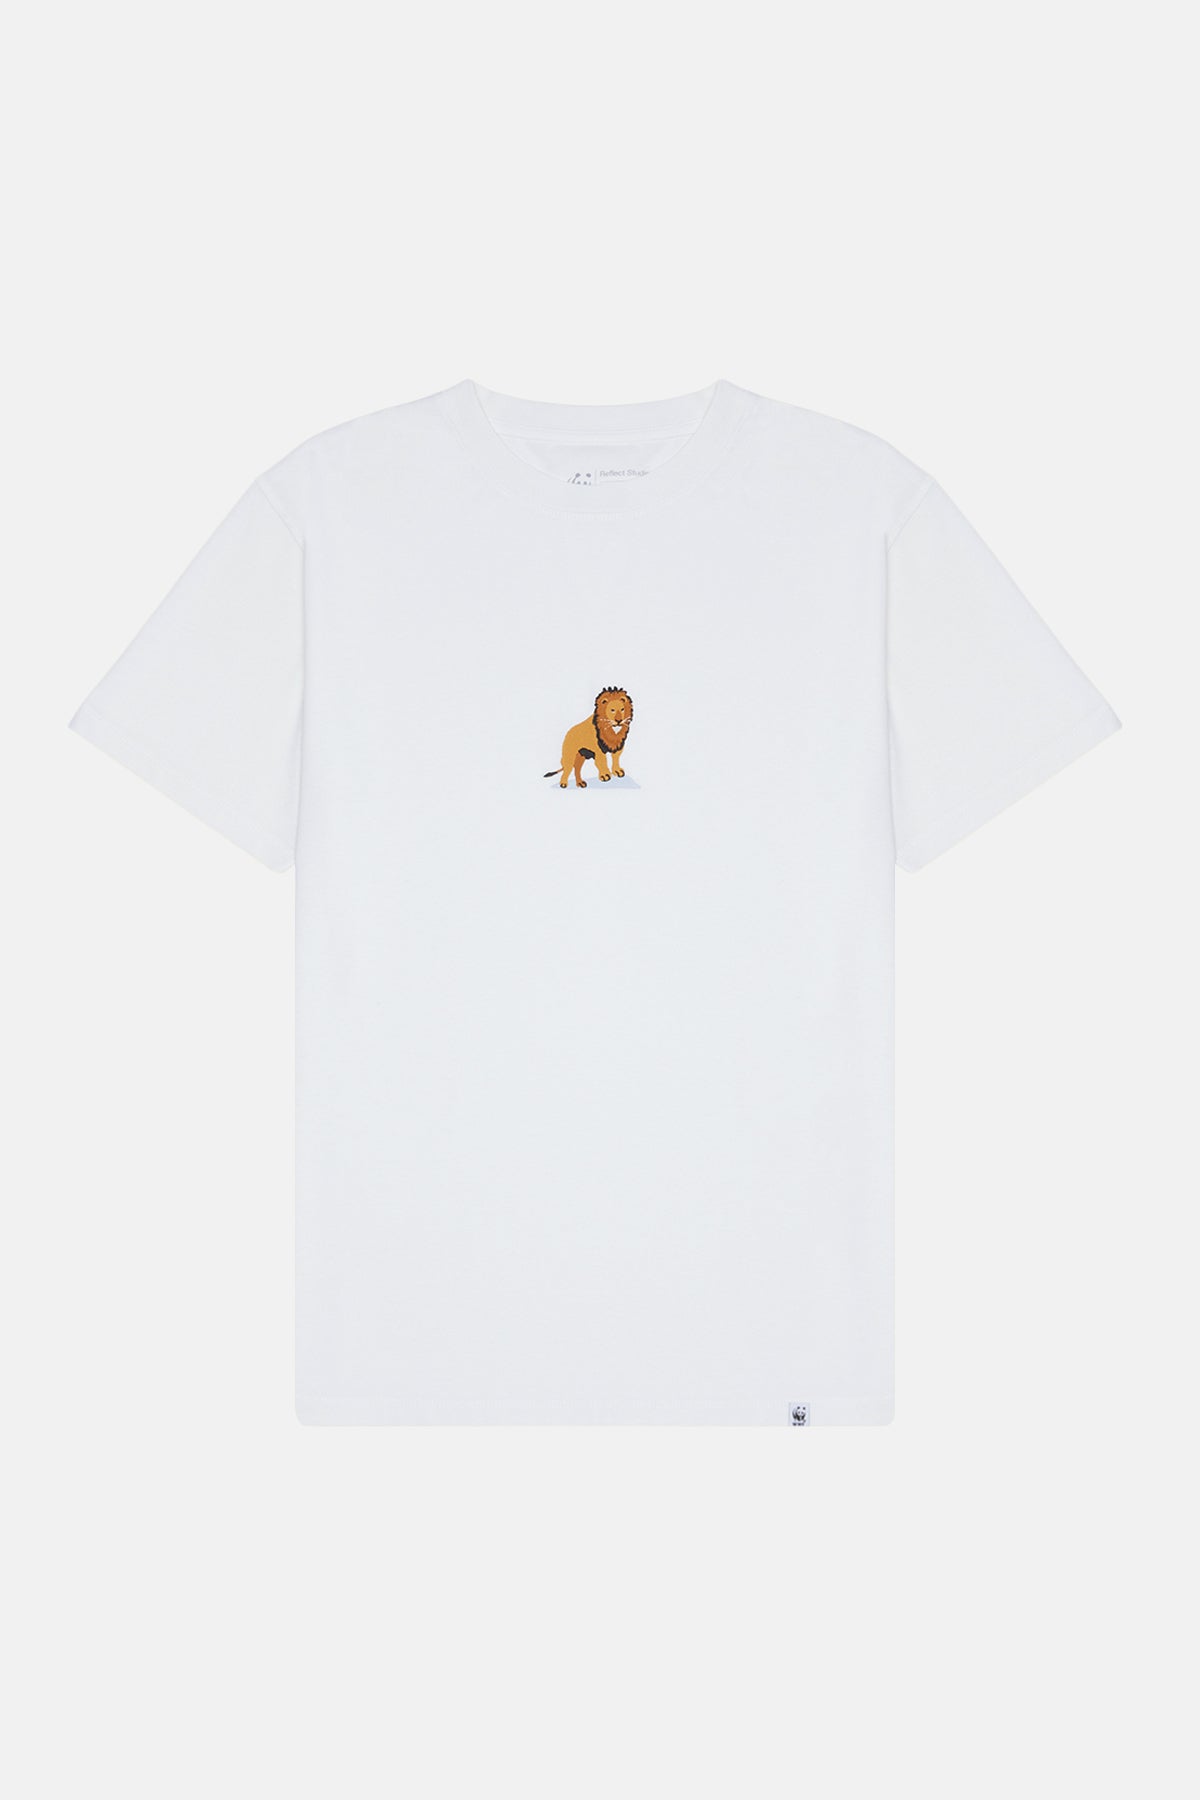 Aslan Light-Weight T-shirt - Beyaz